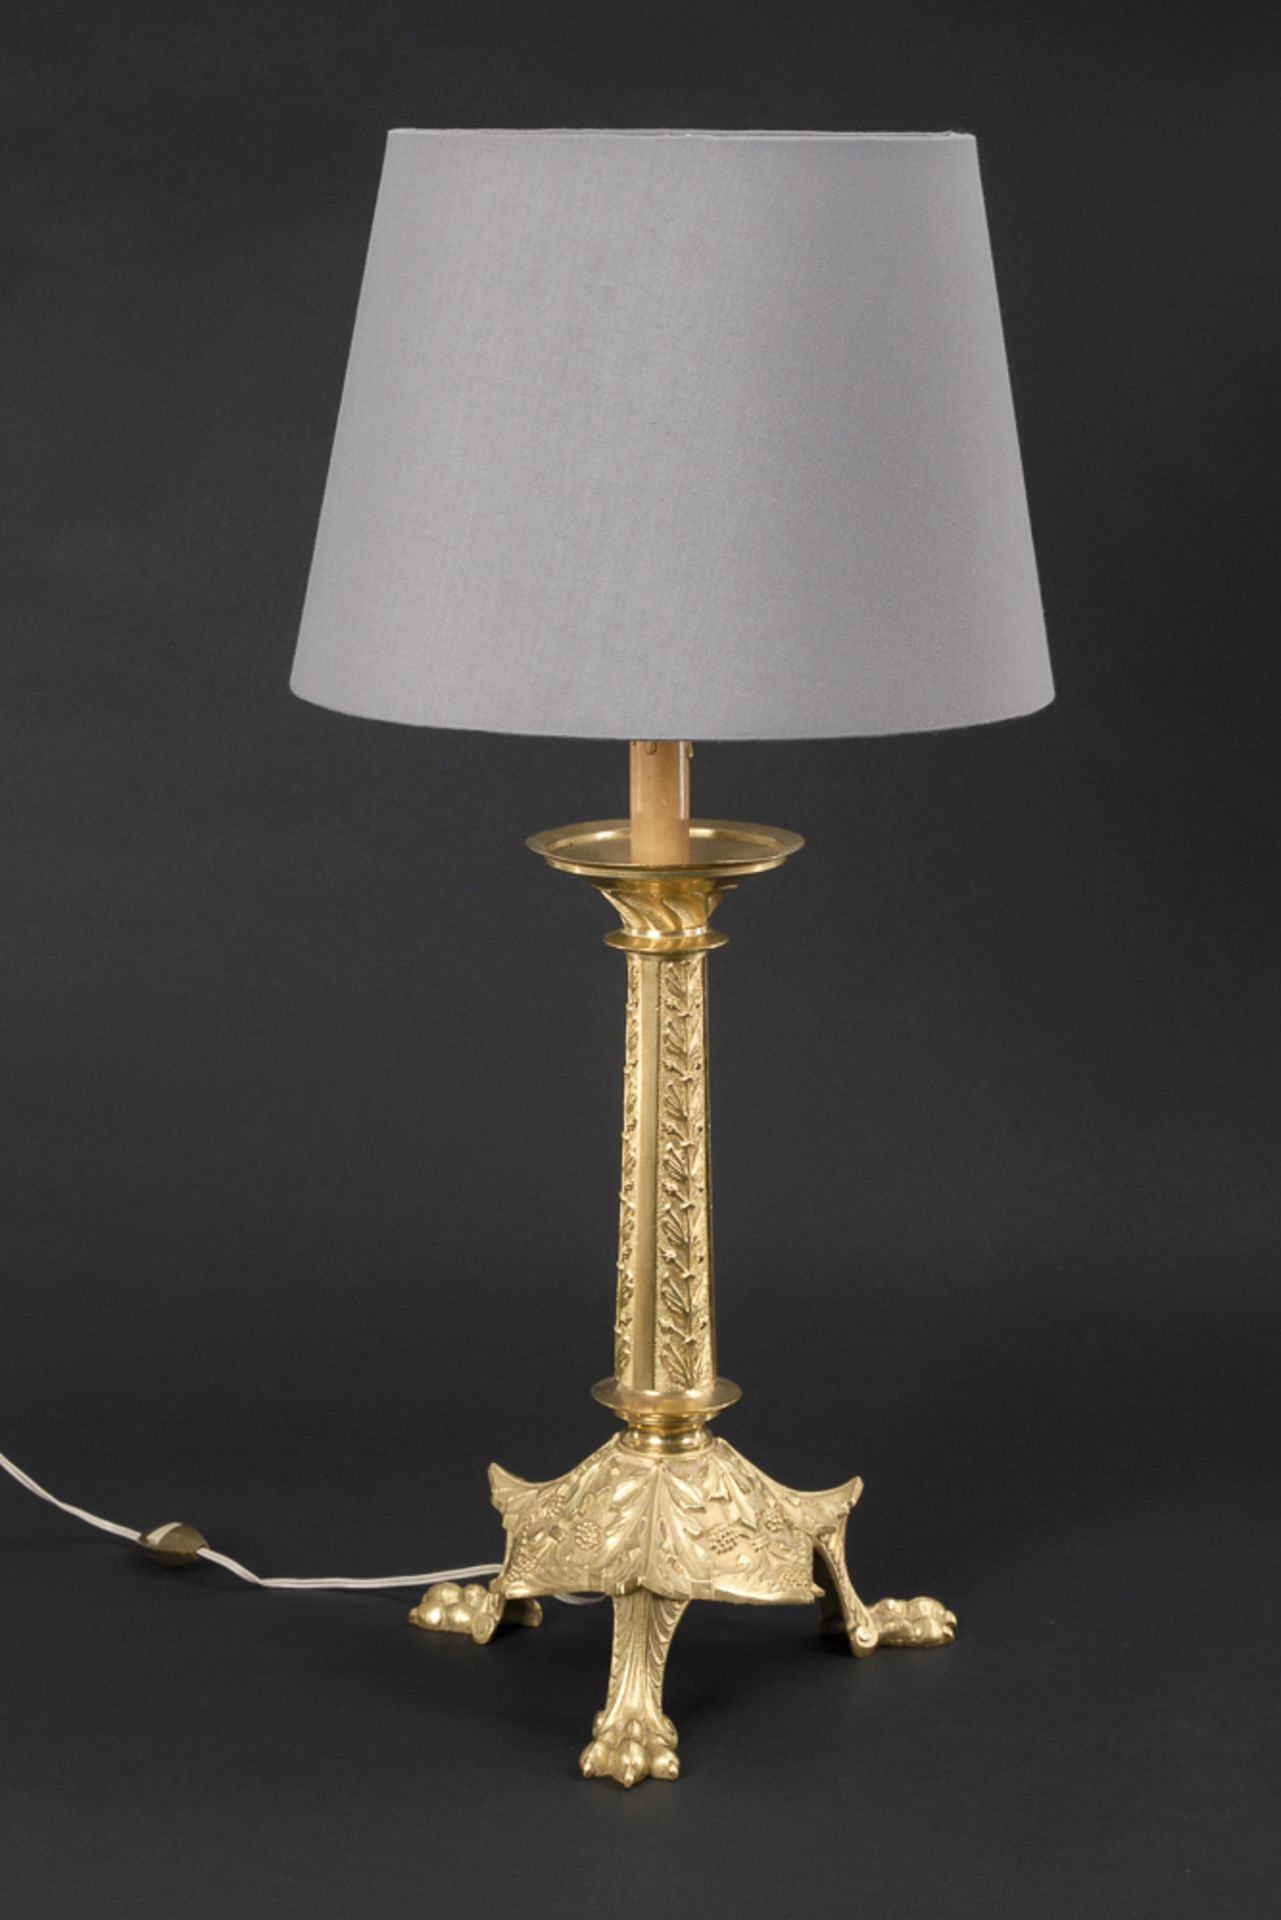 Tischlampe mit Neoromanik-Bronzeleuchter als Lampenfuß.Bronzeleuchter 2. Hälfte 19. Jh., neu